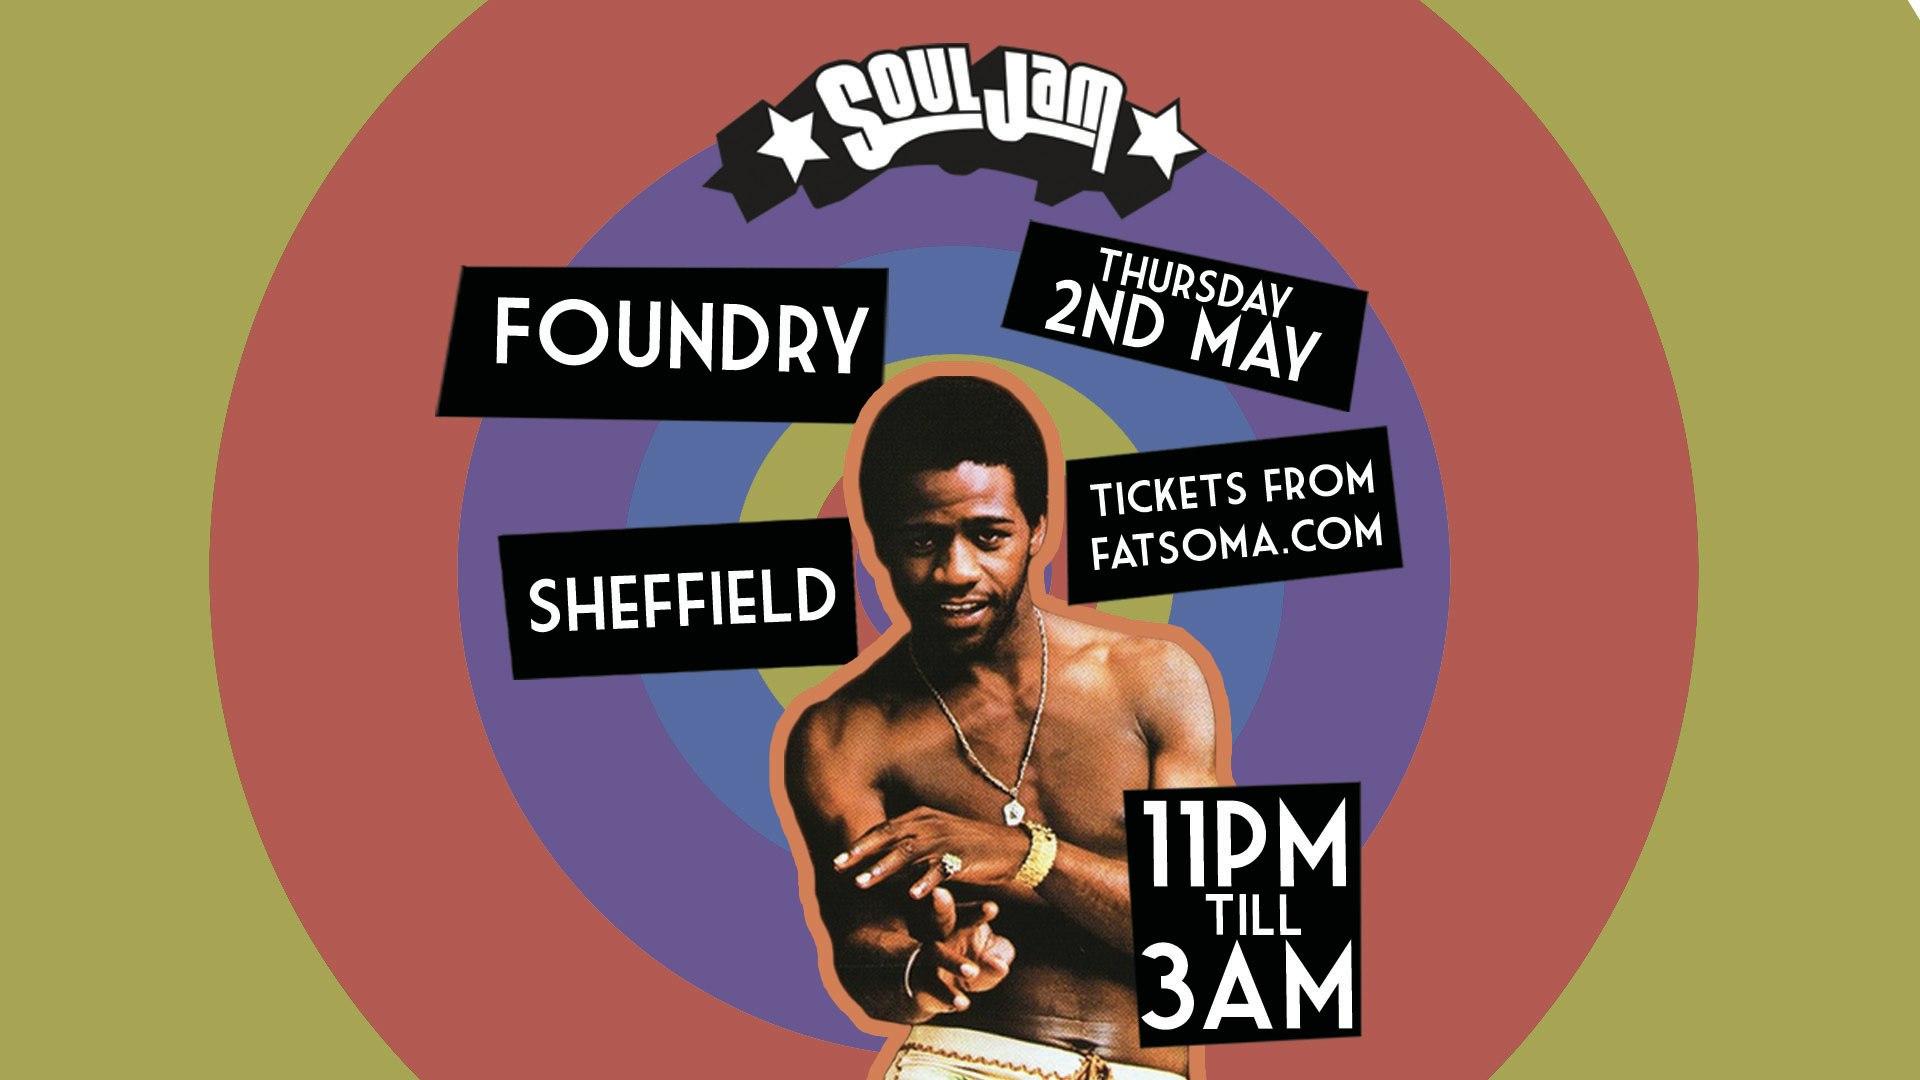 SoulJam | Sheffield | Foundry | The boogie’s back!